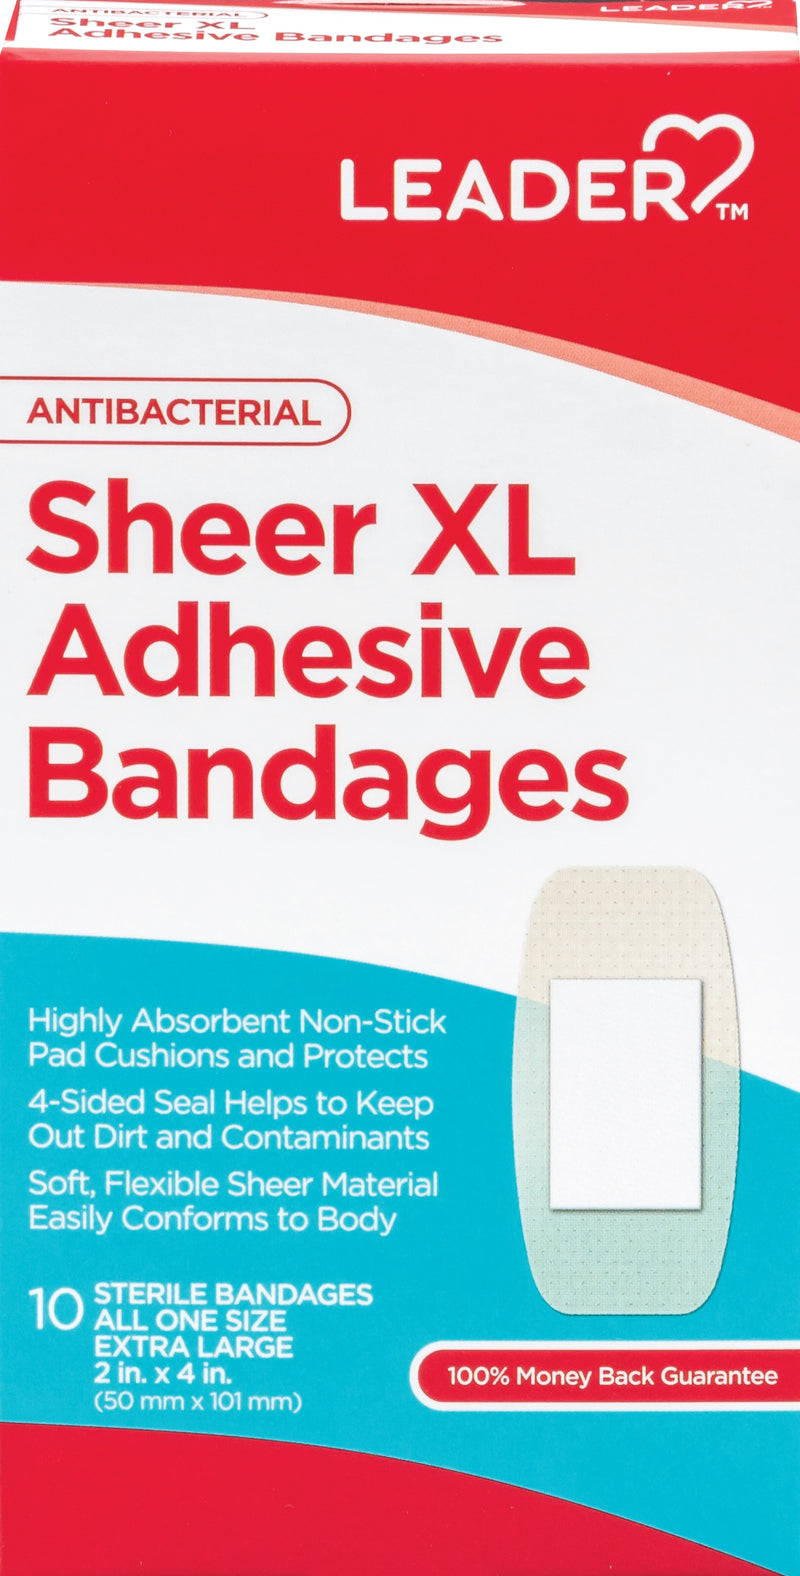 Sheer XL Adhesive Bandages | AntiBacterial | 10 Bandages Extra Large